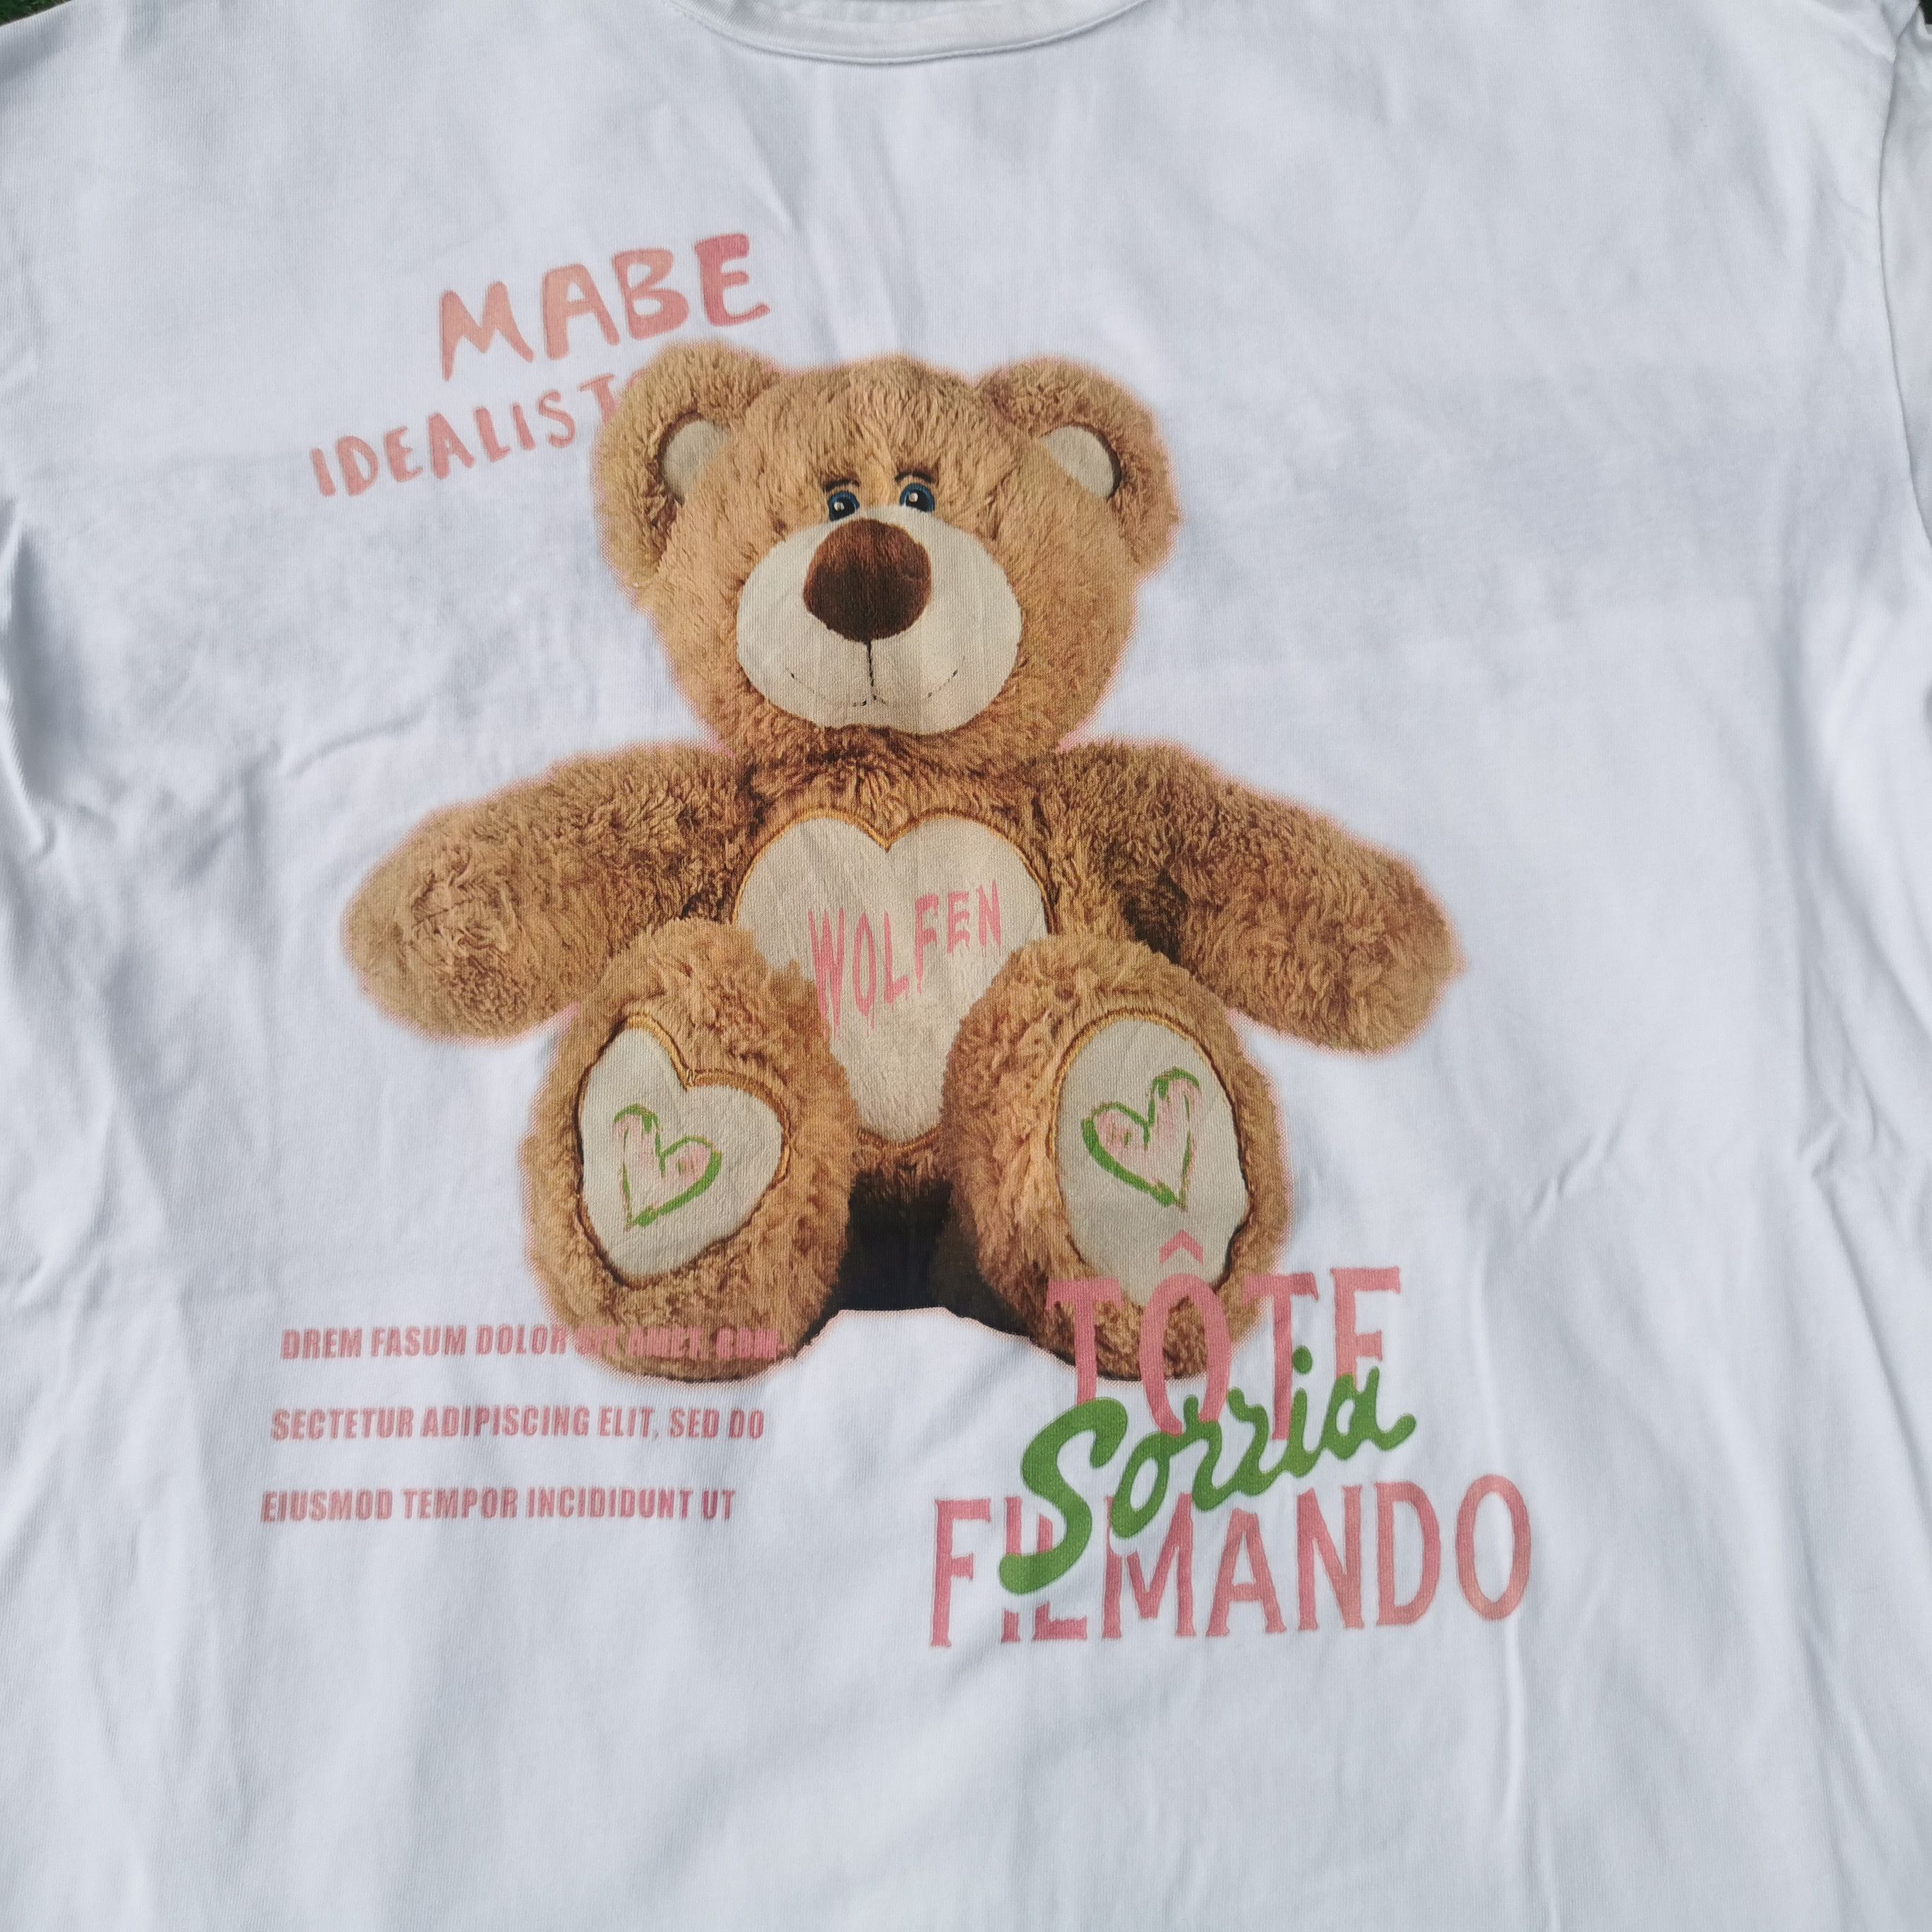 Vintage Bad Bears Soft Toy Series Tshirt - 2